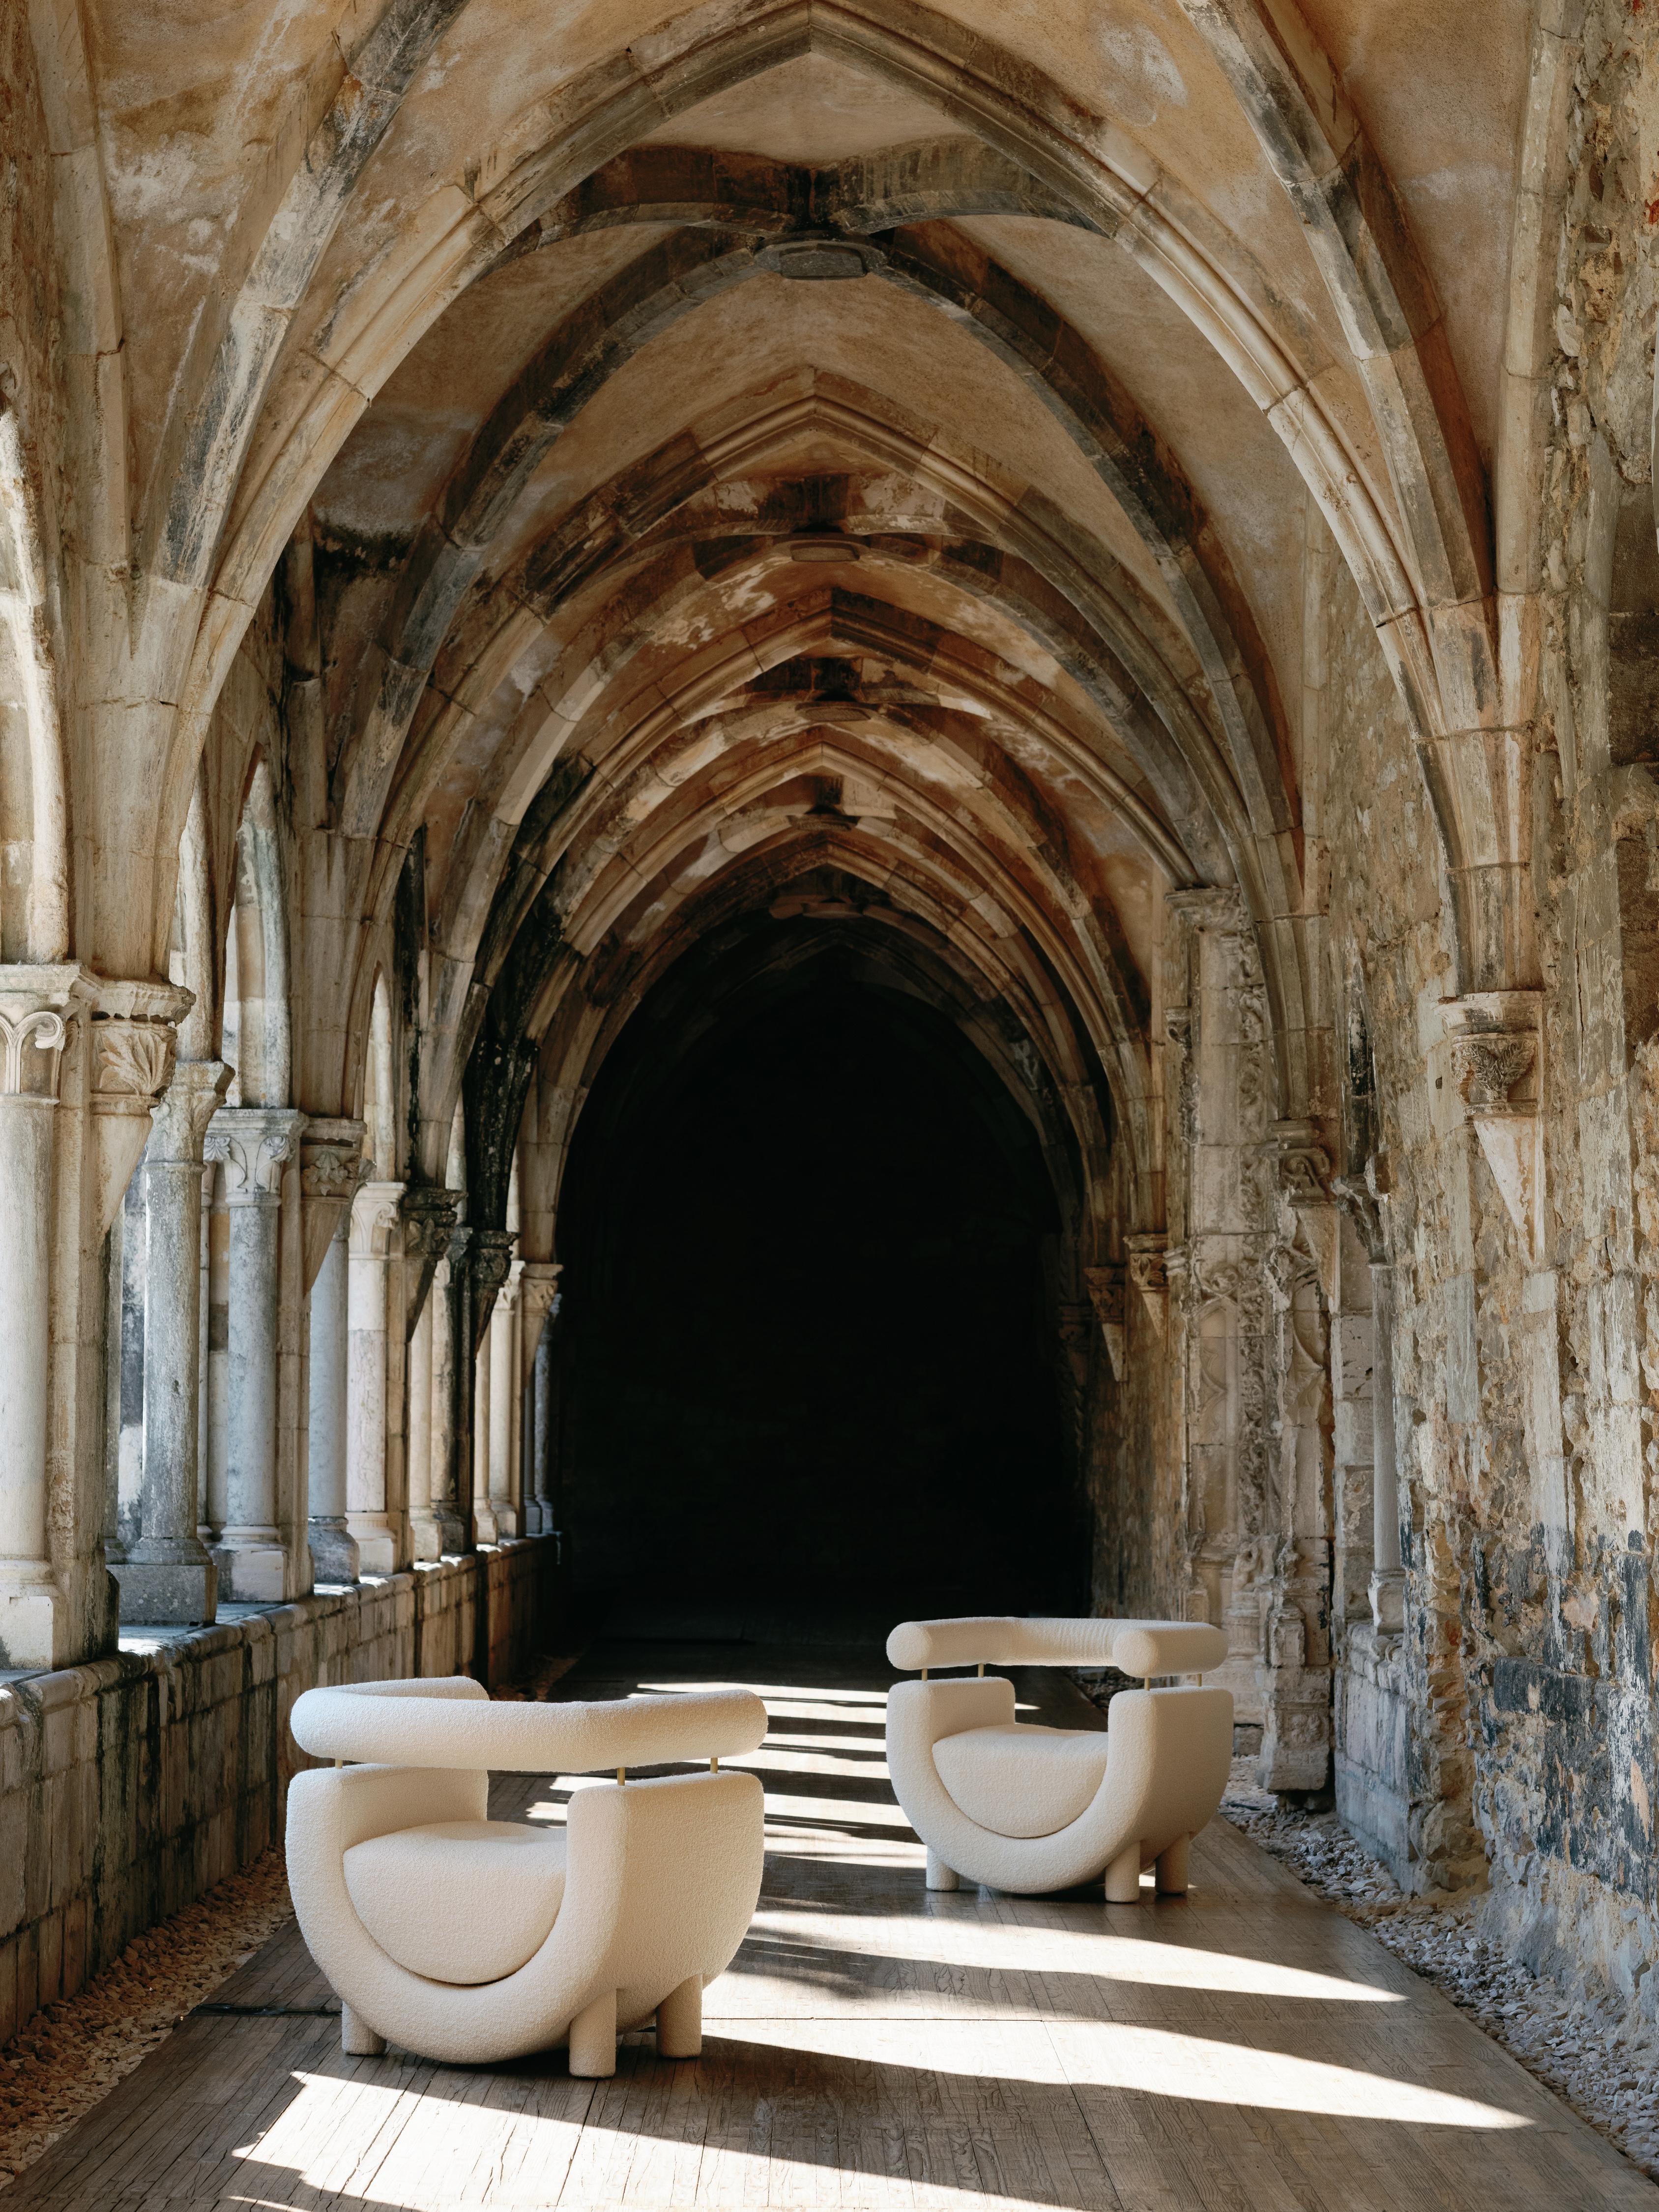 Sessel Mel, Collection'S Contemporary, handgefertigt in Portugal - Europa von Greenapple.

Der Sessel Mel, benannt nach dem reinsten und süßesten Geschenk der Natur, bringt die beruhigende Essenz des Honigs zum Vorschein und bietet unbestreitbar